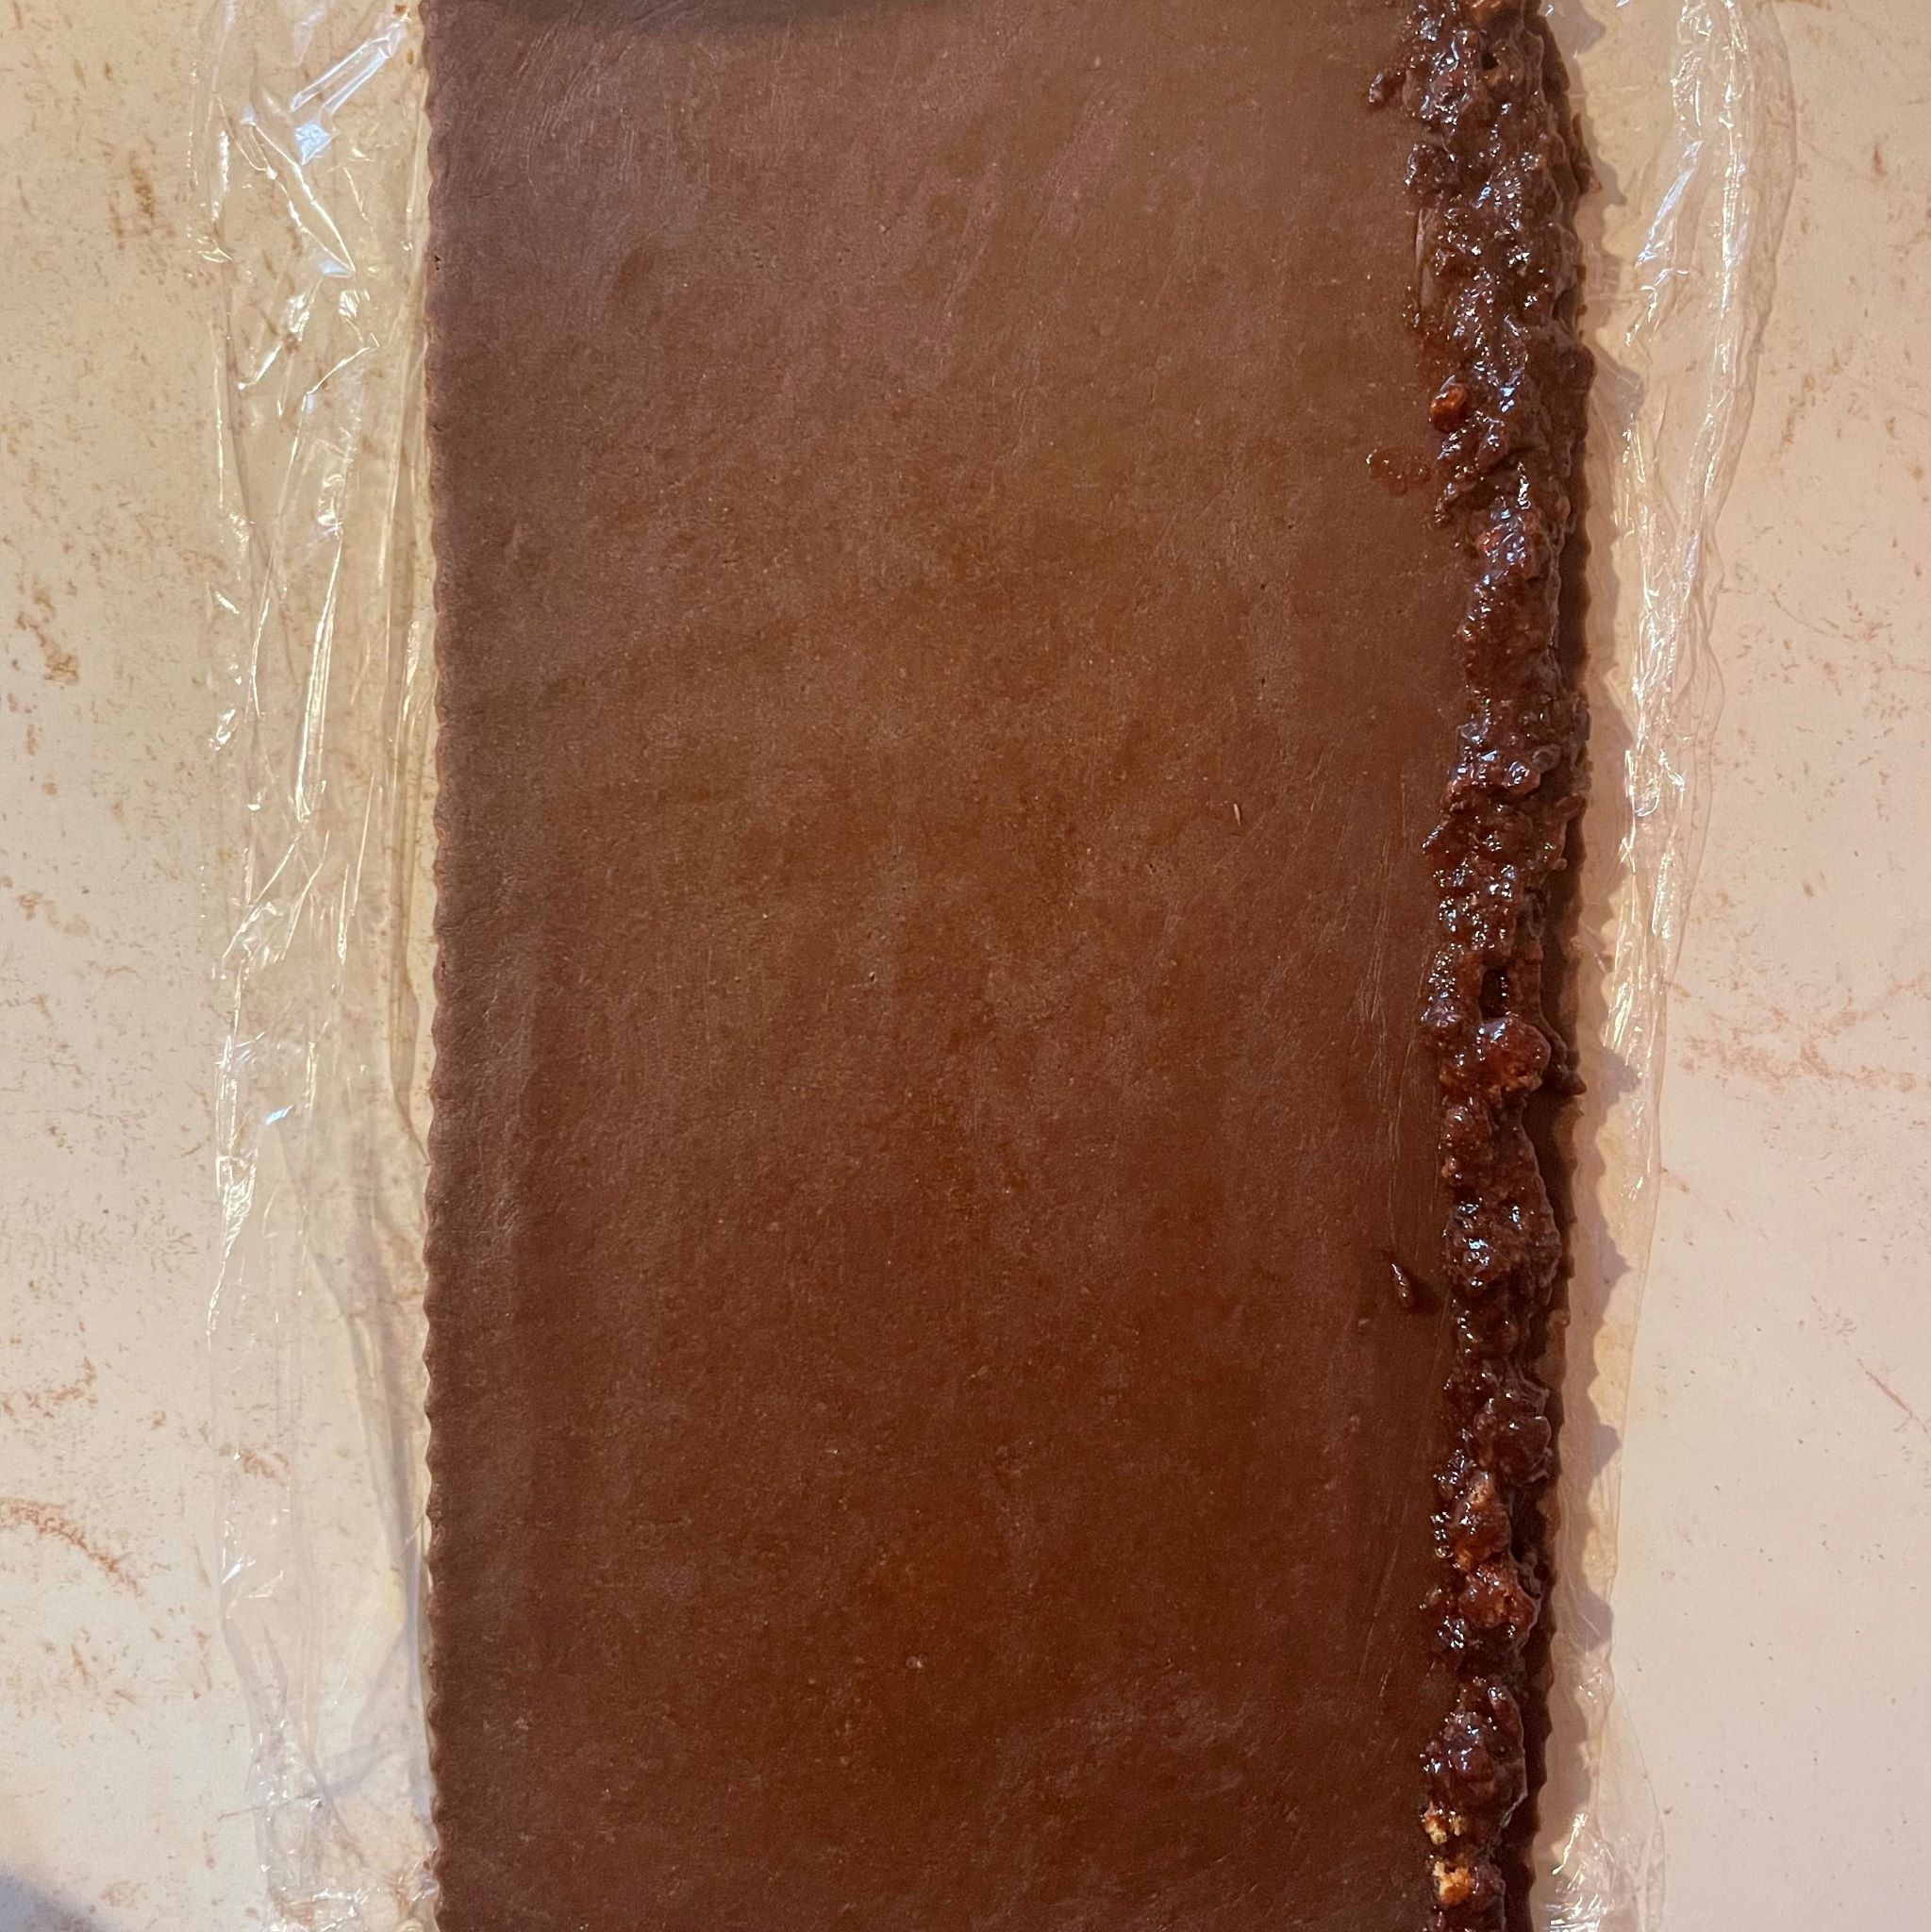 Obdĺžnik rozvaľkaného kakaového cesta na okraji náplň zo slivkového lekváru a perníku